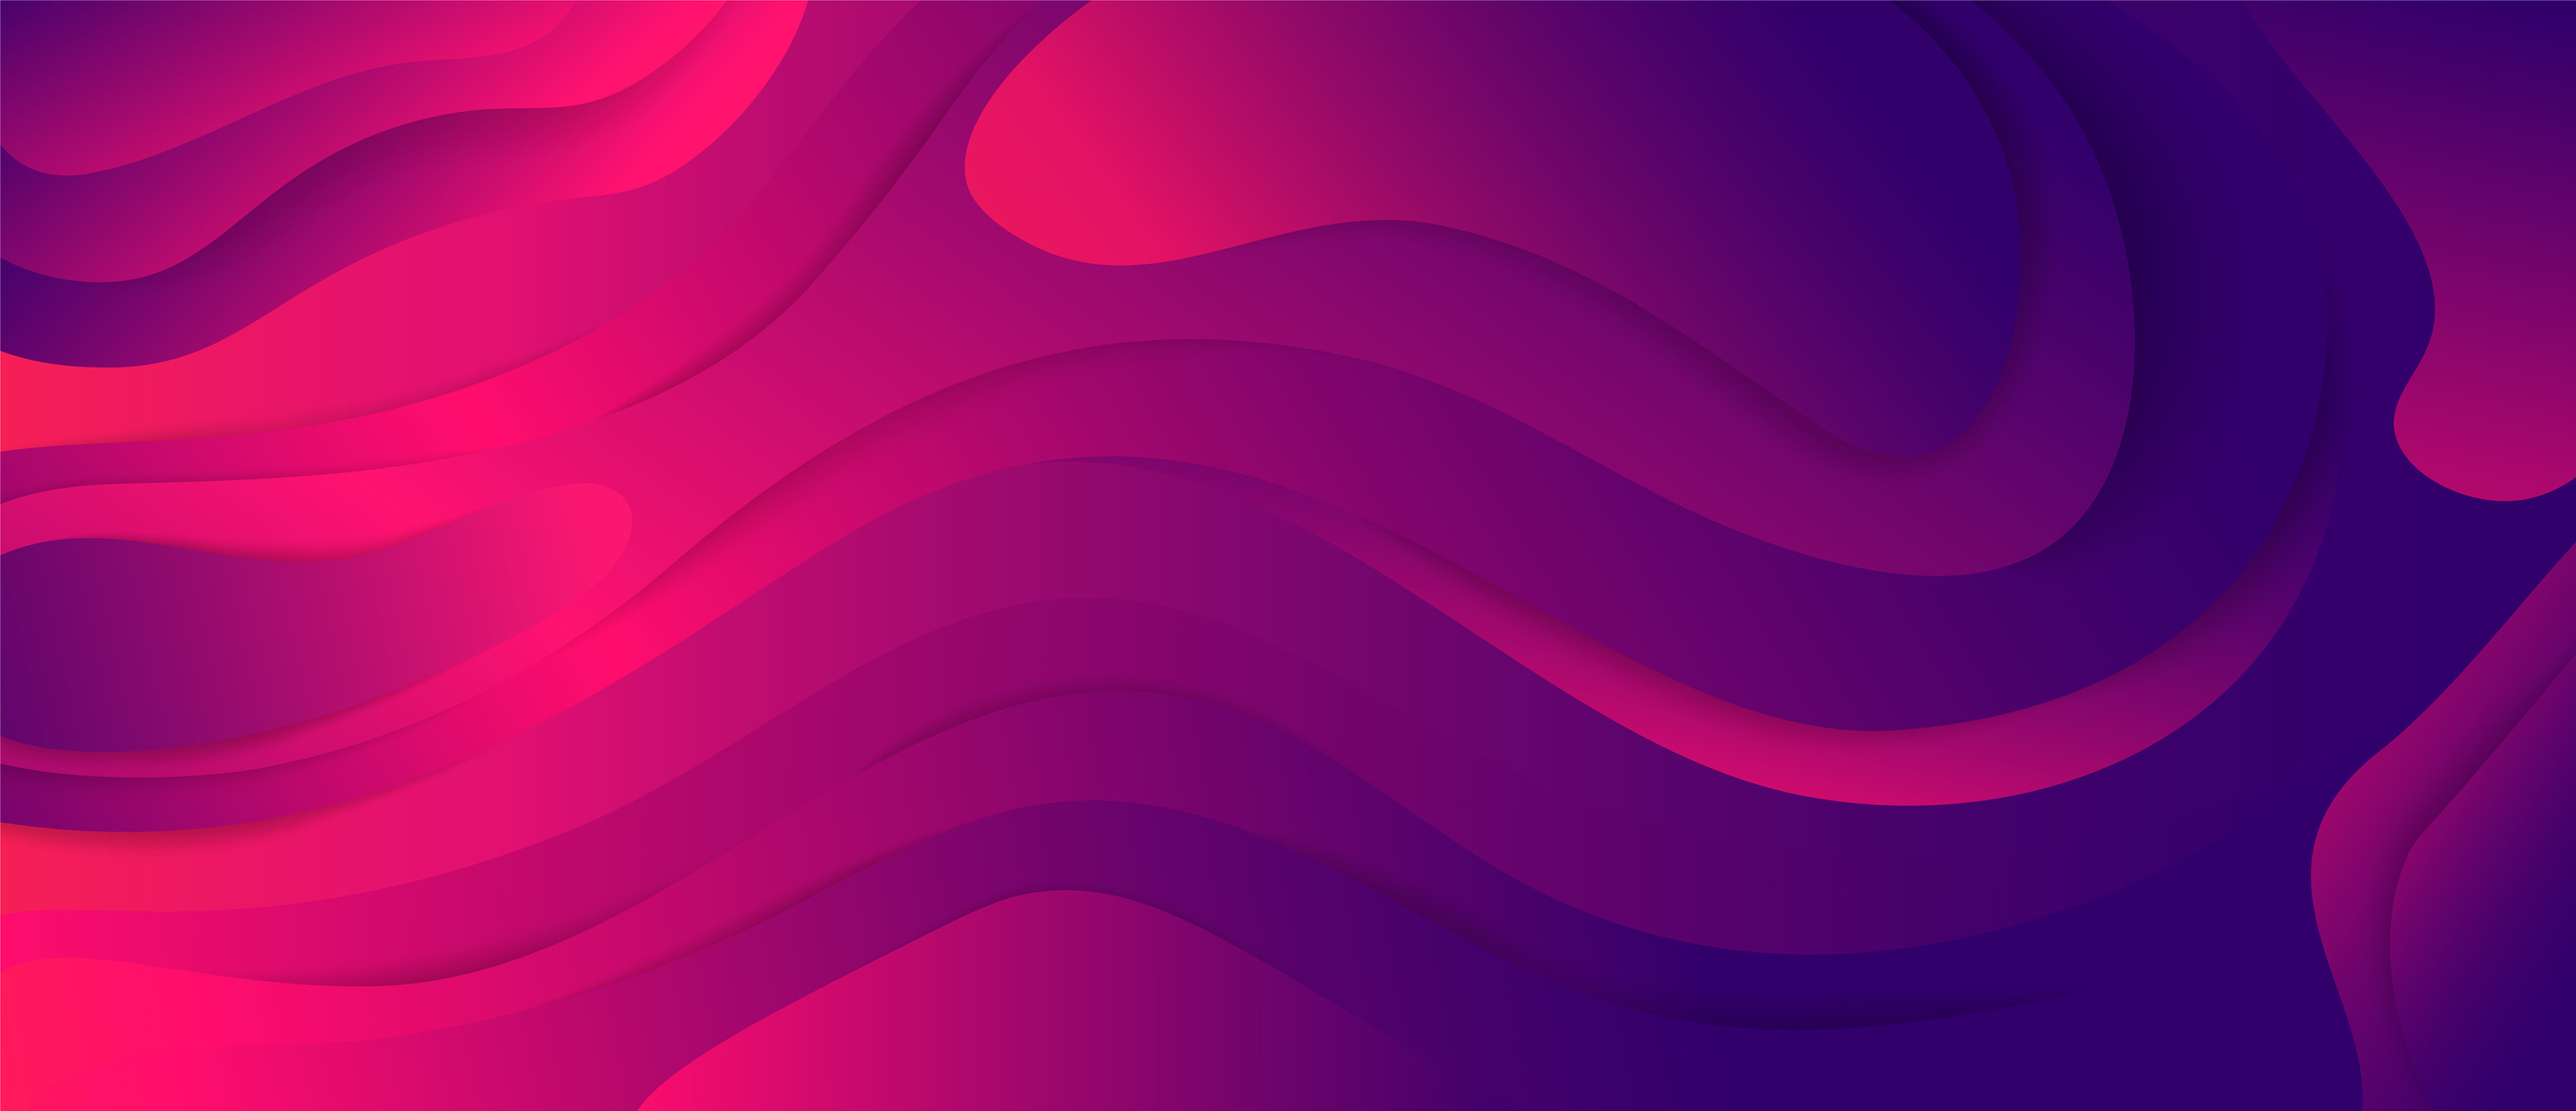 Futuristic colorful gradient purple